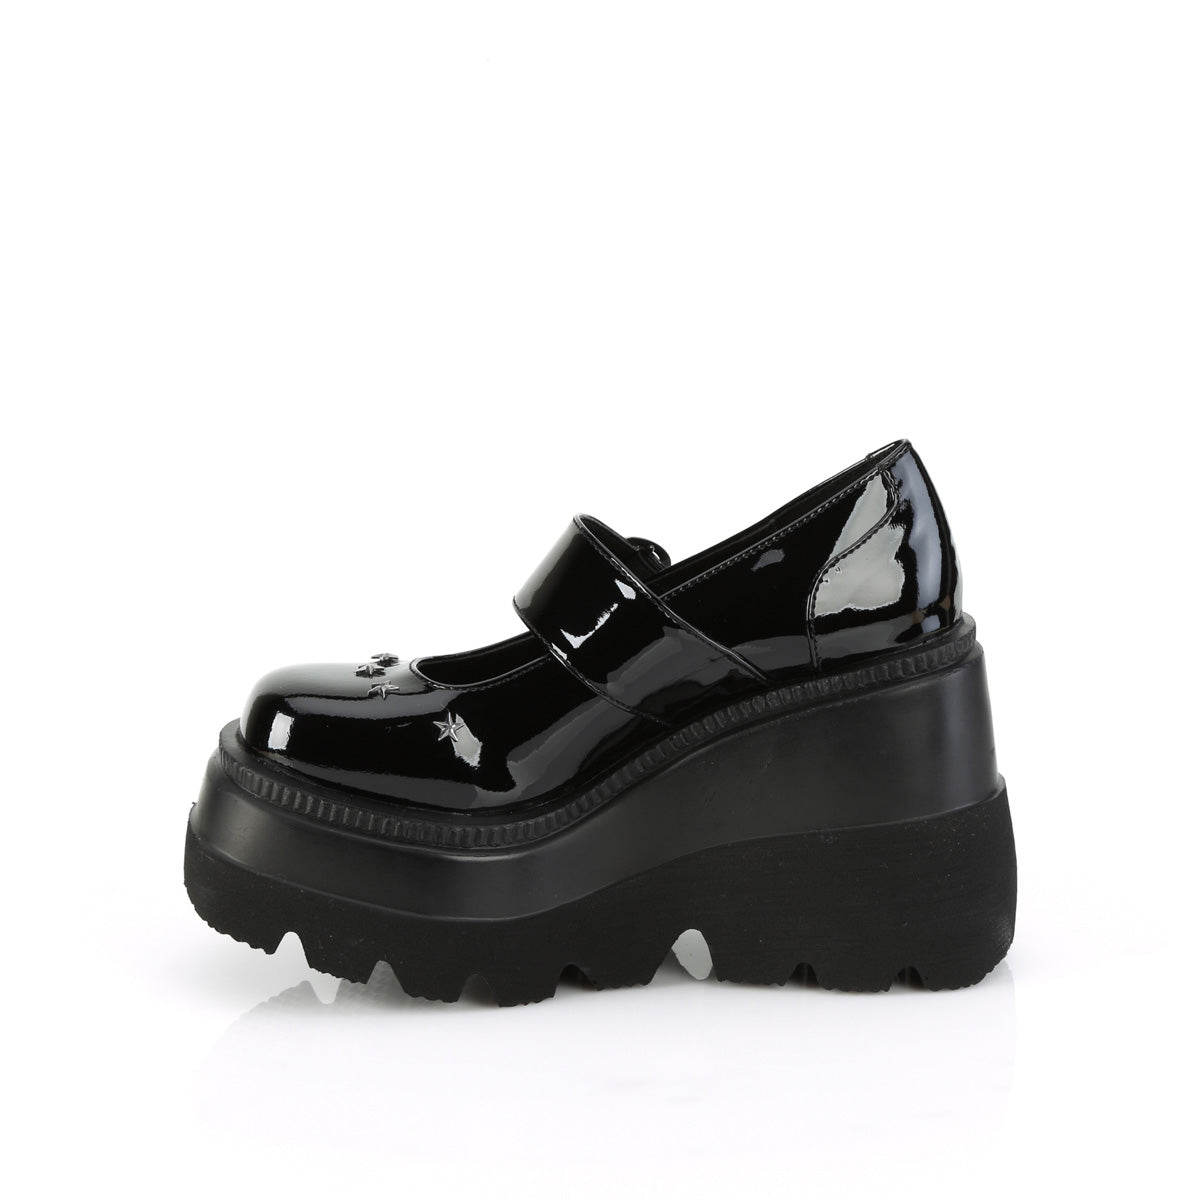 Demonia Shaker-23 Wedge Platform Shiny Mary Jane Shoes